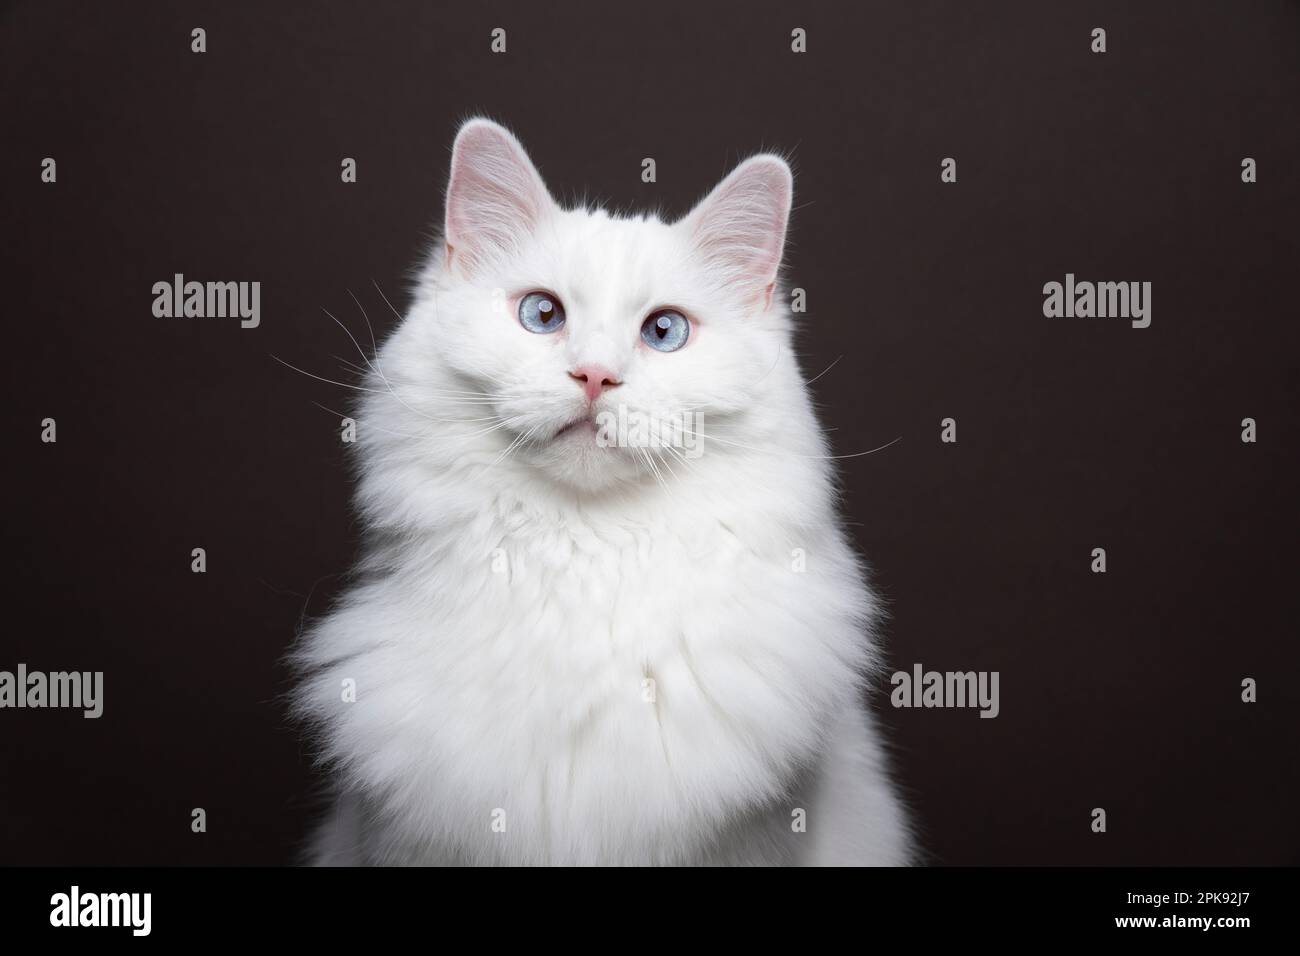 Gatto ragdoll bianco con occhi blu che guardano la telecamera squinting. Verticale su sfondo marrone con spazio per la copia Foto Stock